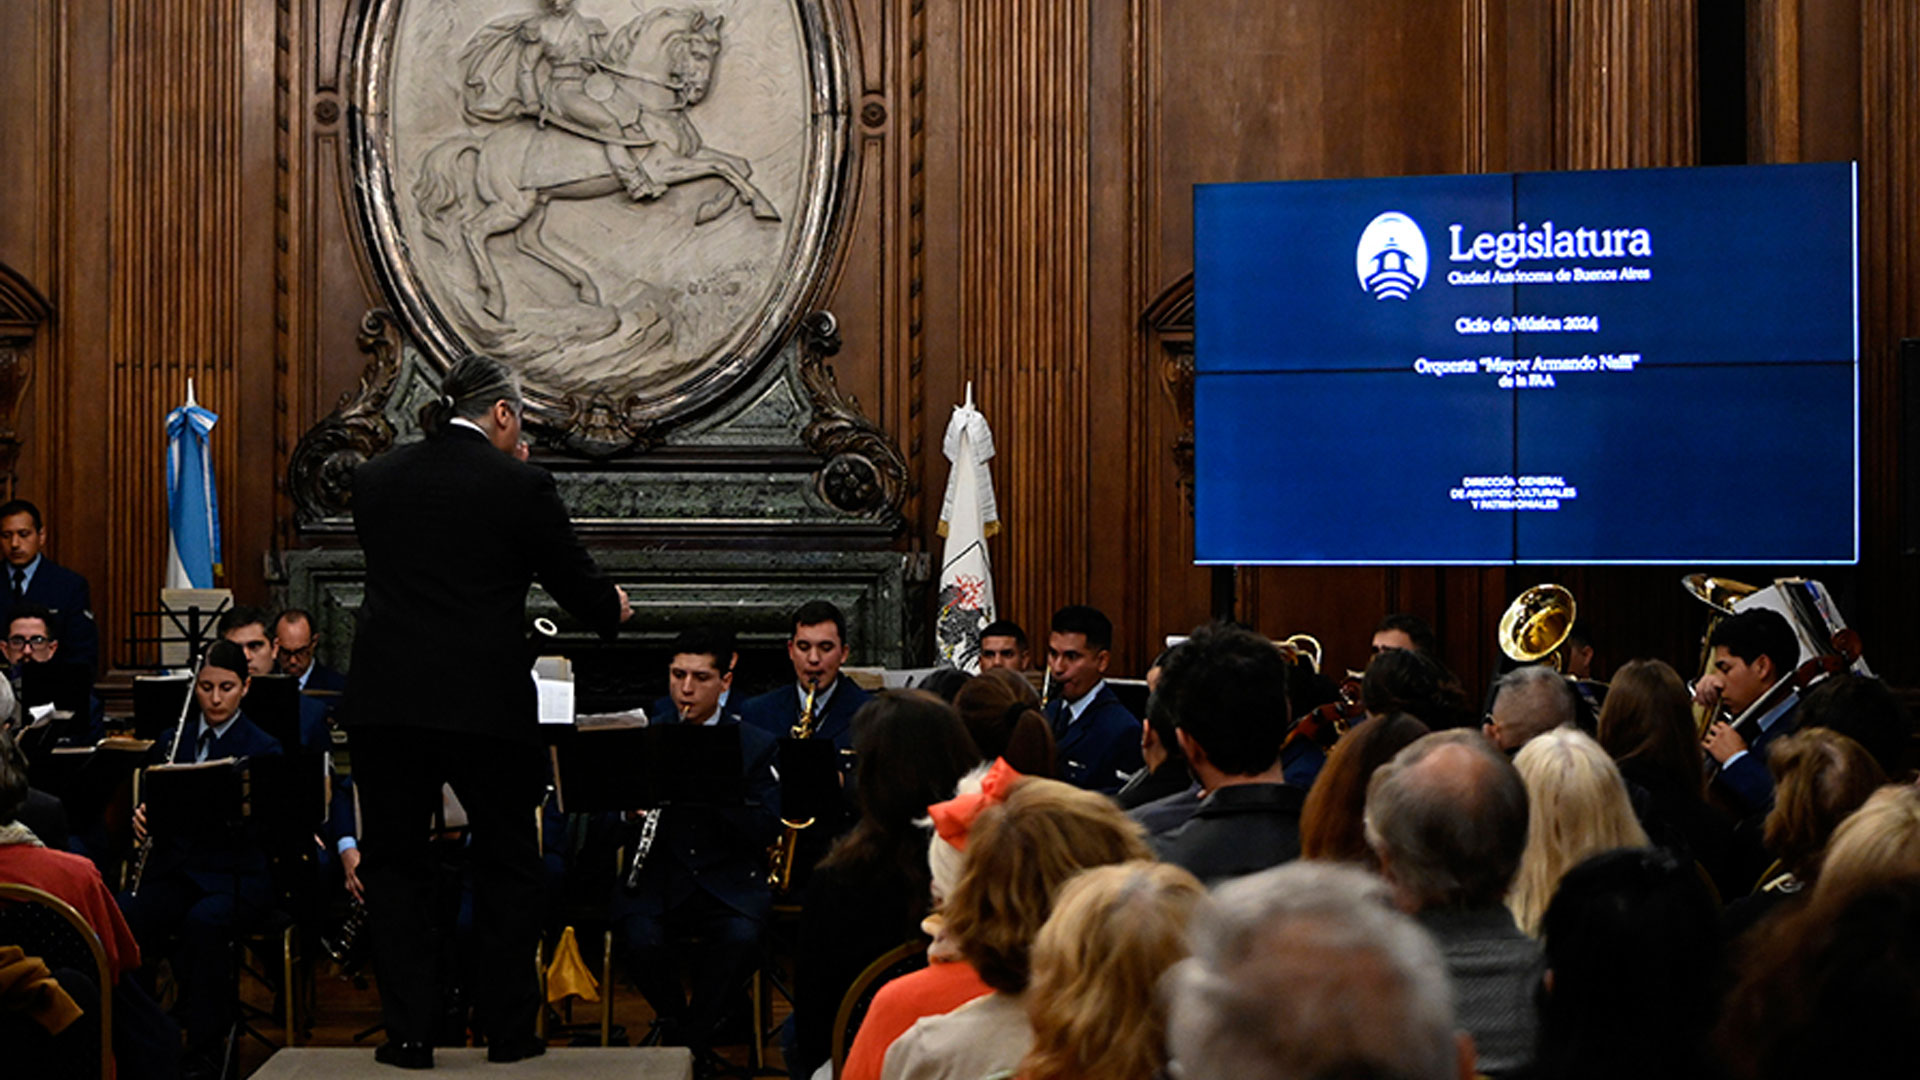 Gala Lírica de la Orquesta de Concierto “Mayor A. Nalli” en la Legislatura Porteña Buenos Aires